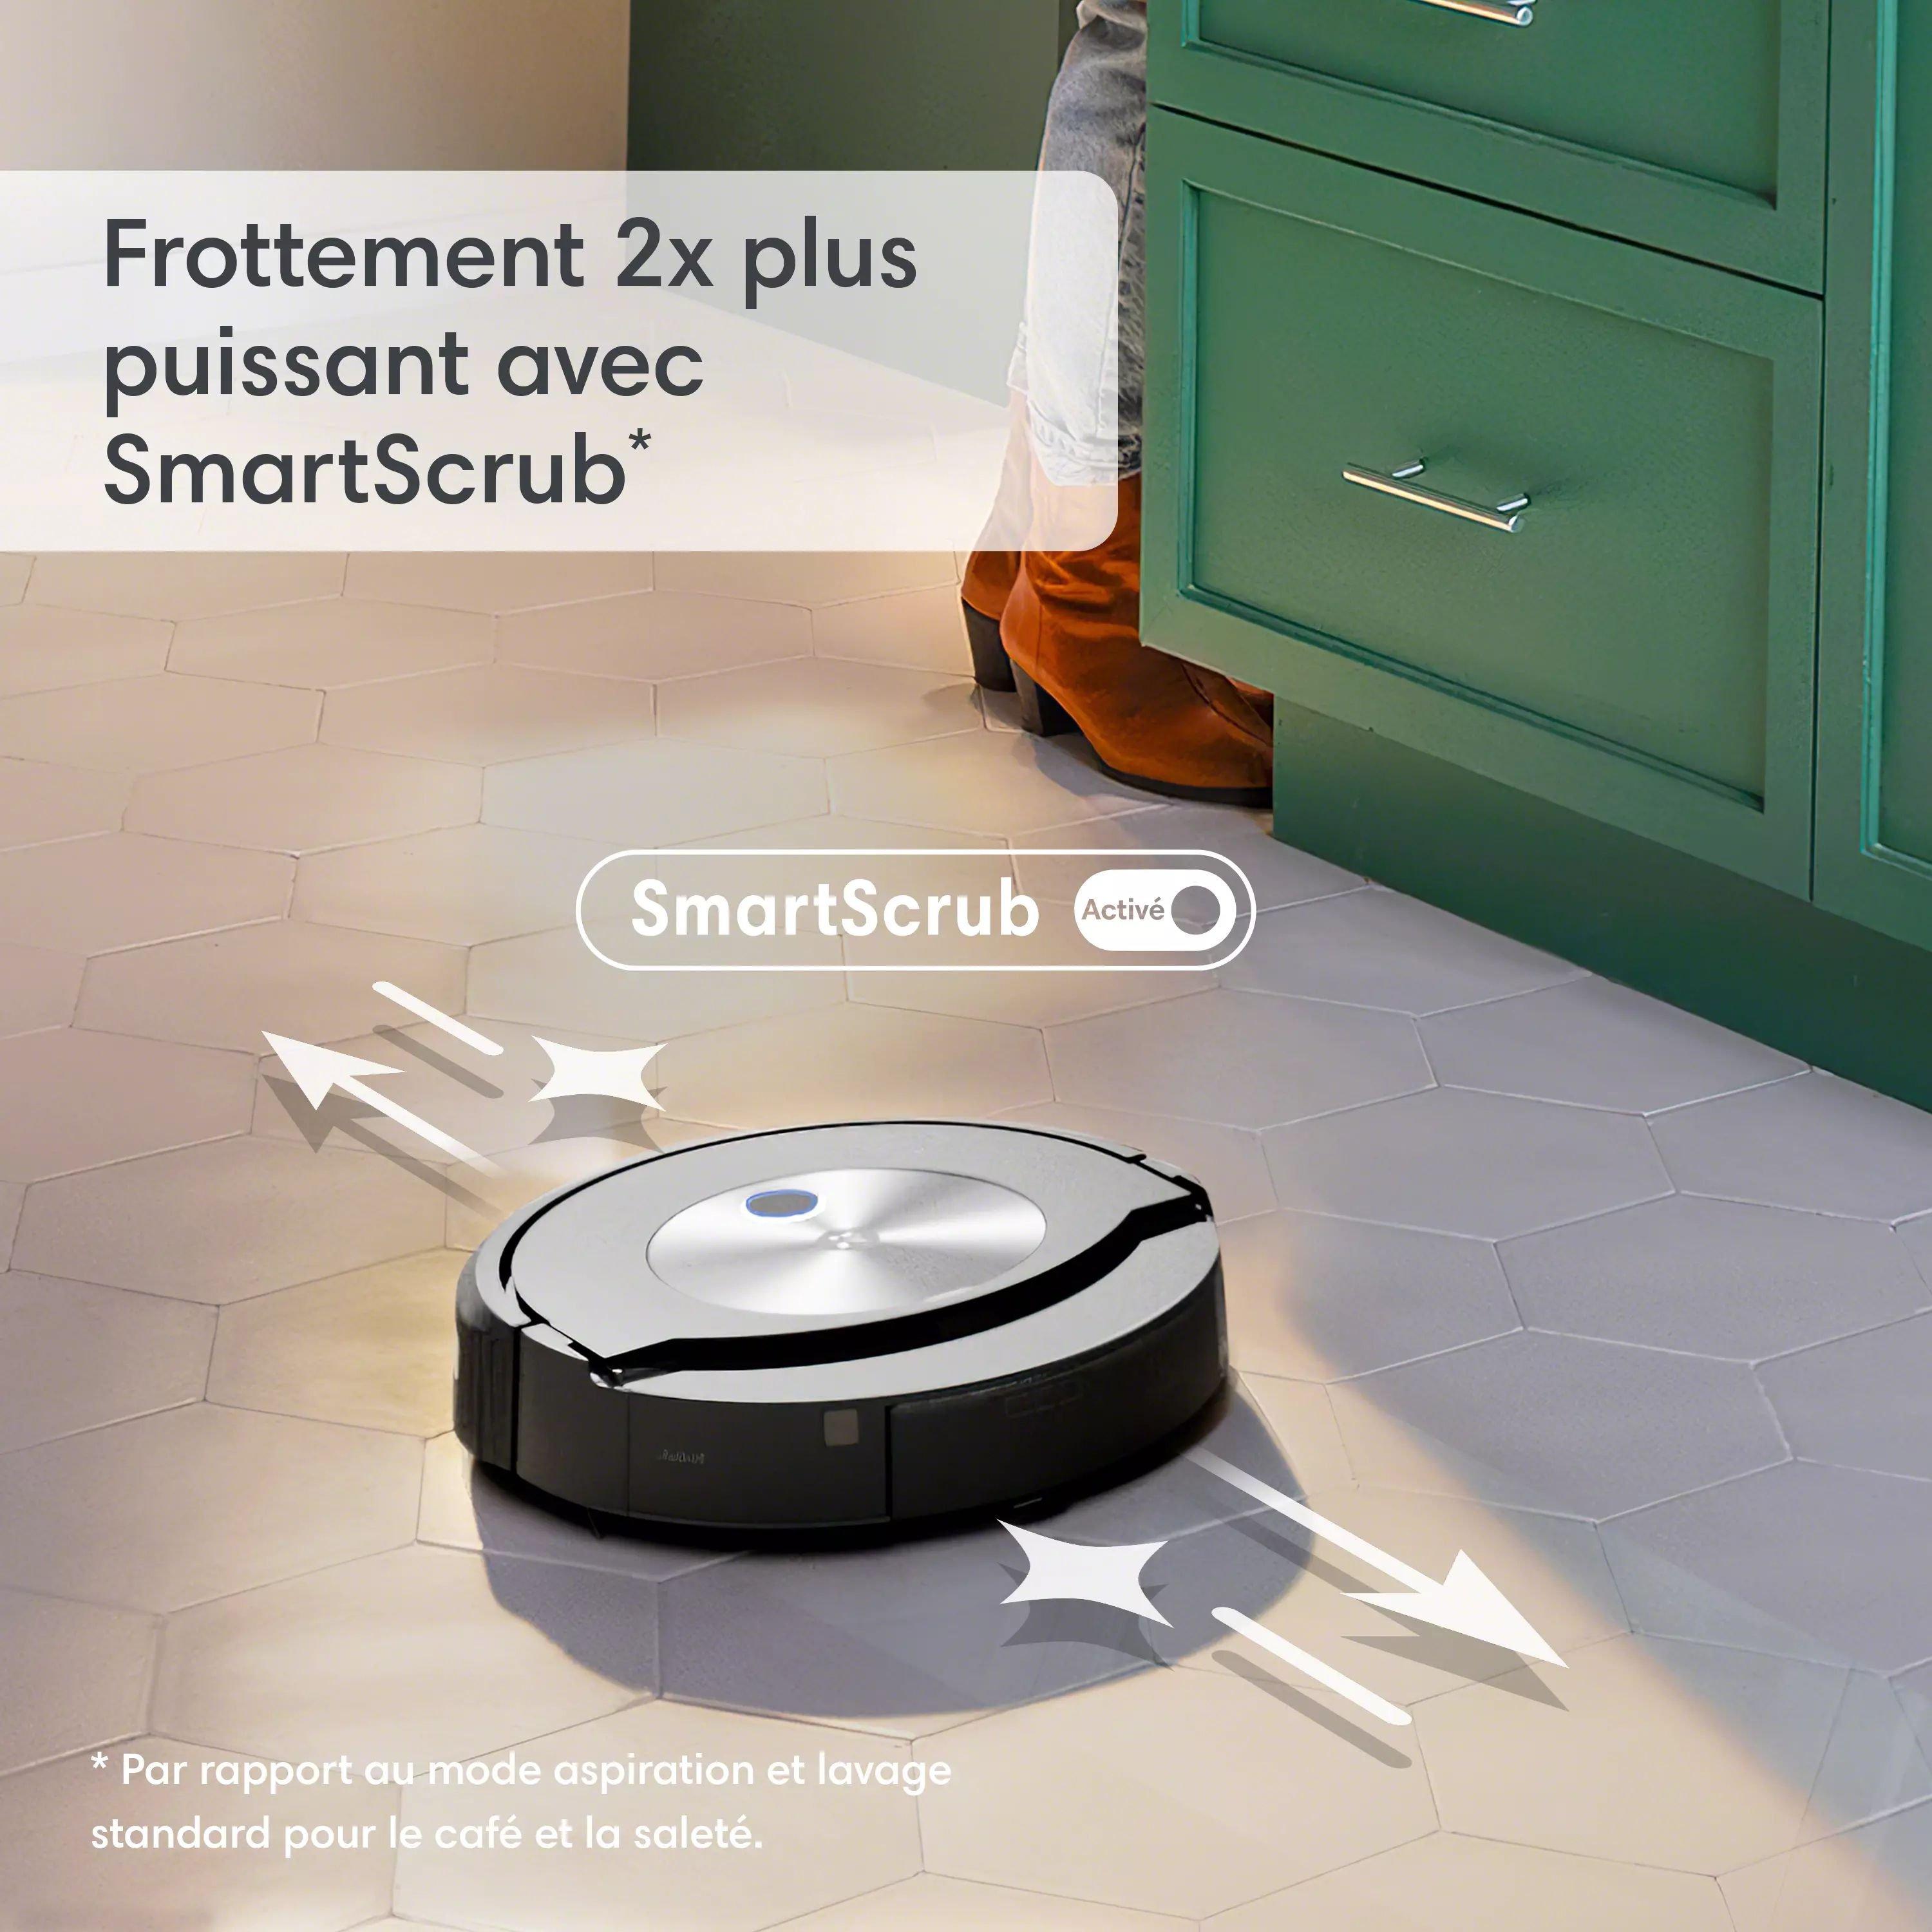 Robot aspirateur et laveur de sols Roomba Combo®, iRobot®